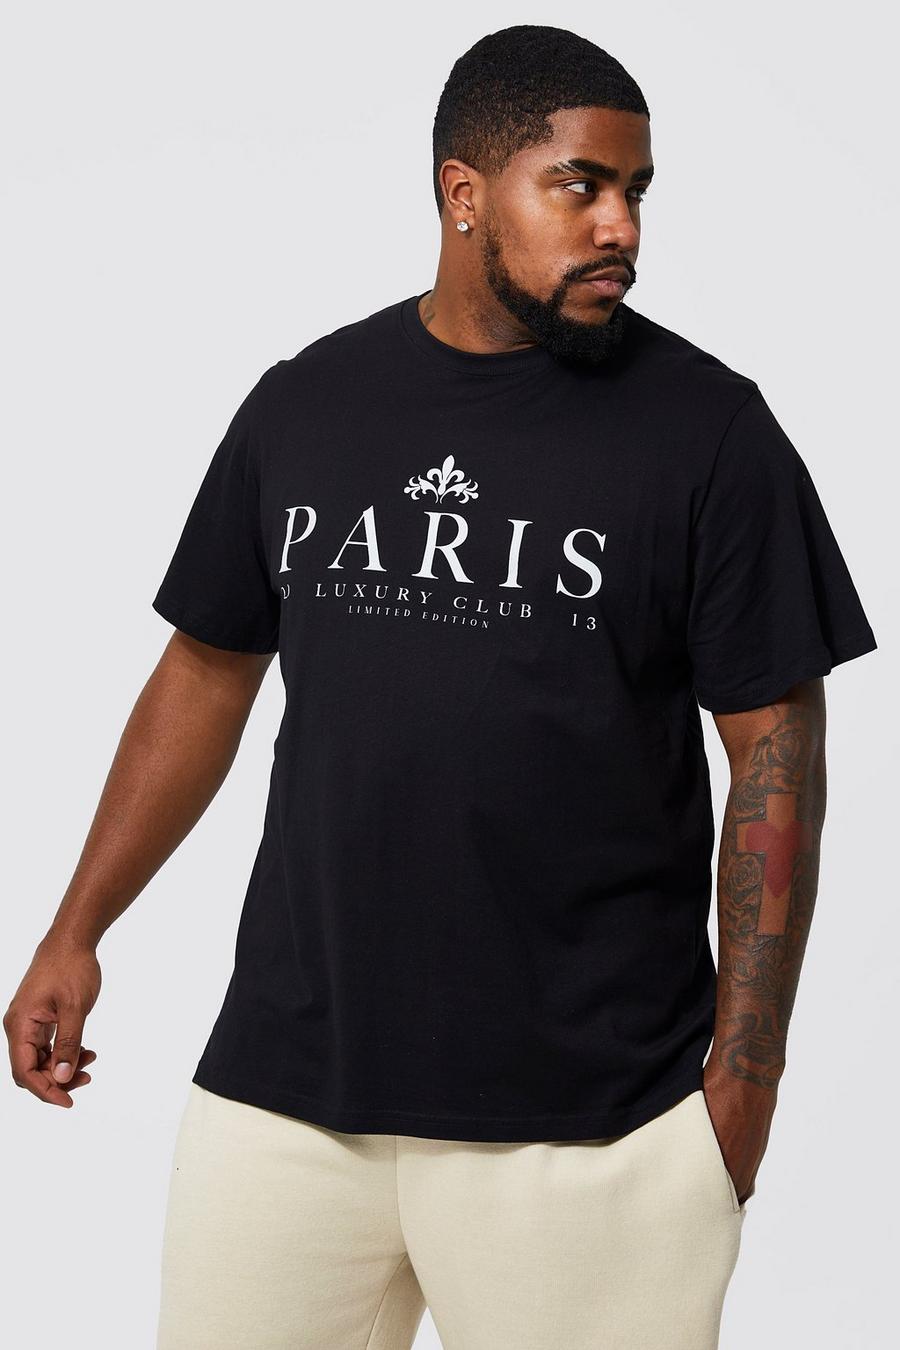 שחור black טישרט עם כיתוב Paris Club, מידות גדולות